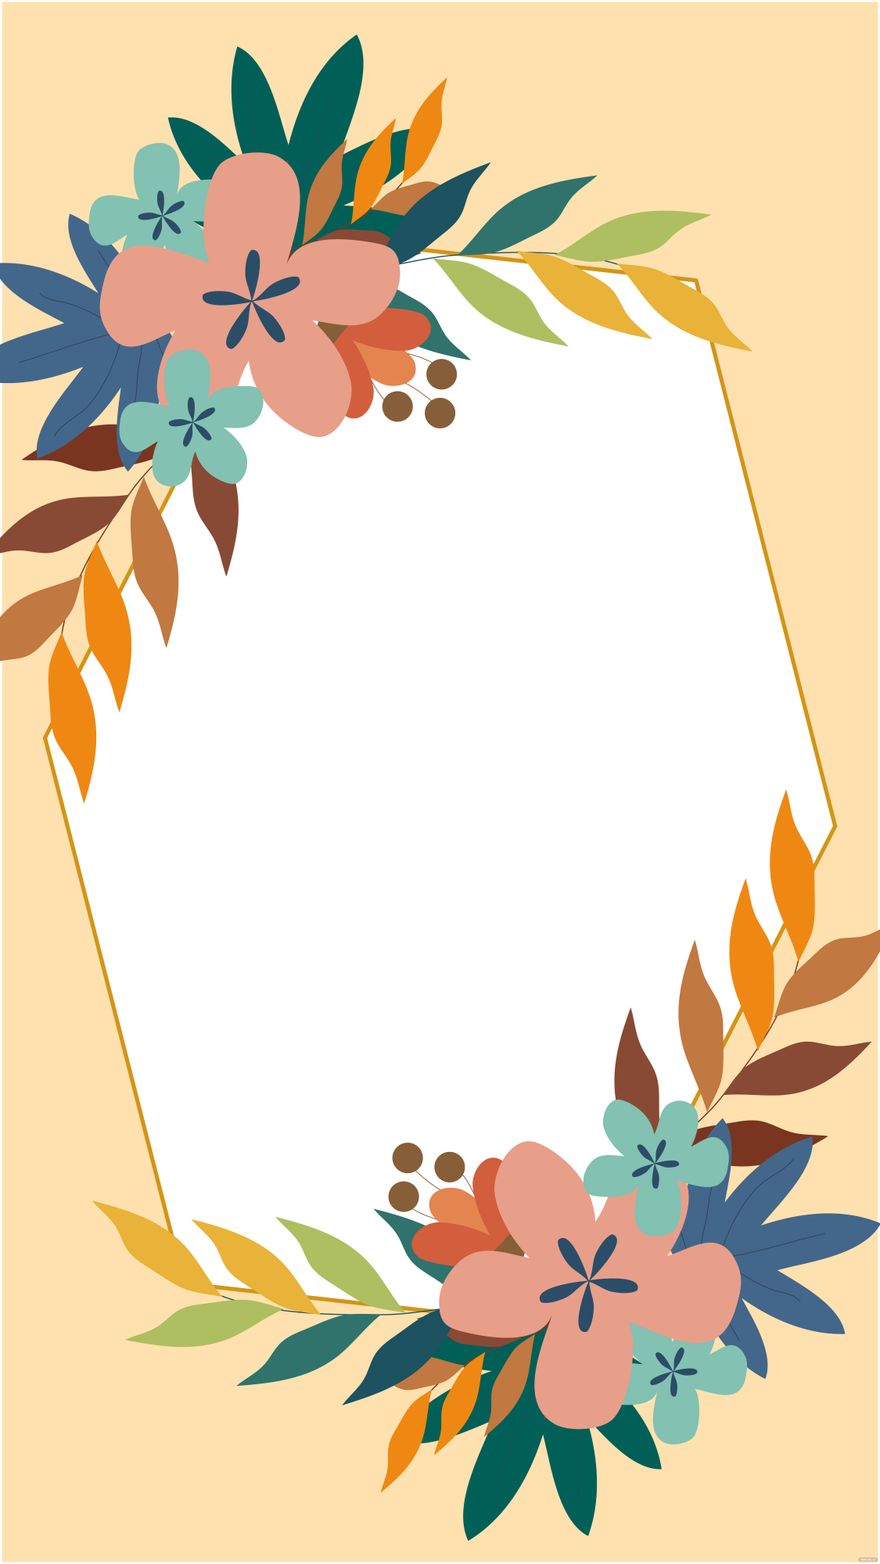 Free Floral Frame Wedding Background in Illustrator, EPS, SVG, JPG